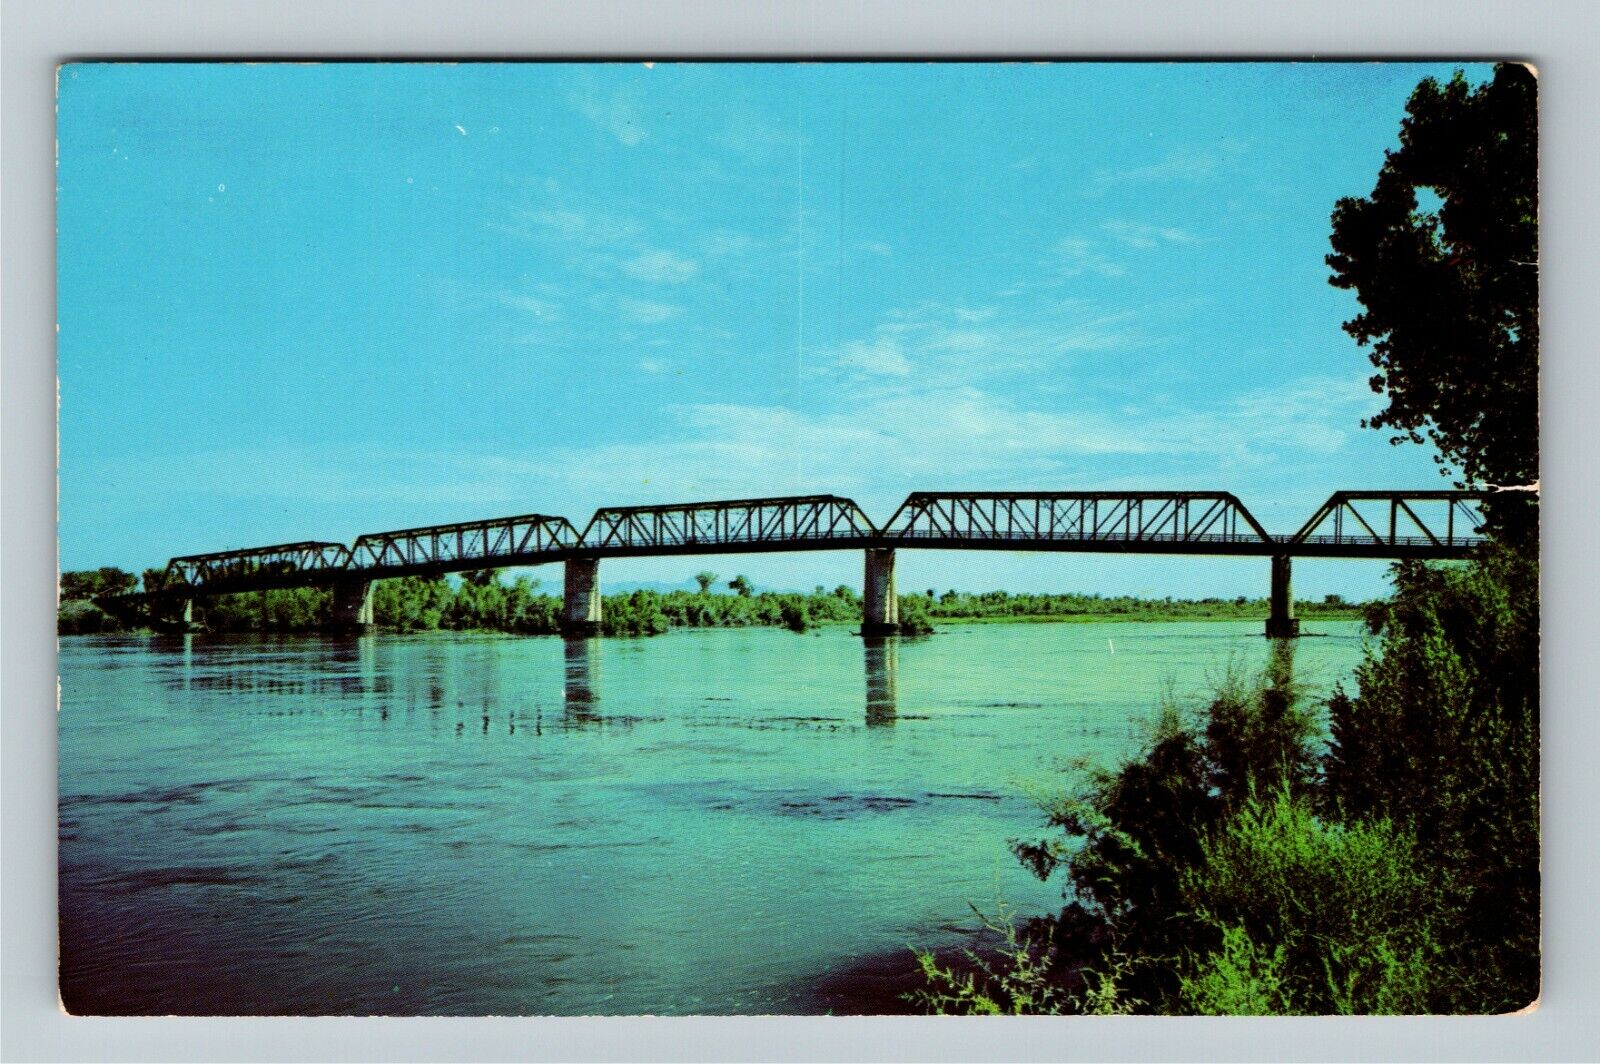 Blythe CA-California, Colorado River Bridge, Colorado River, Vintage Postcard